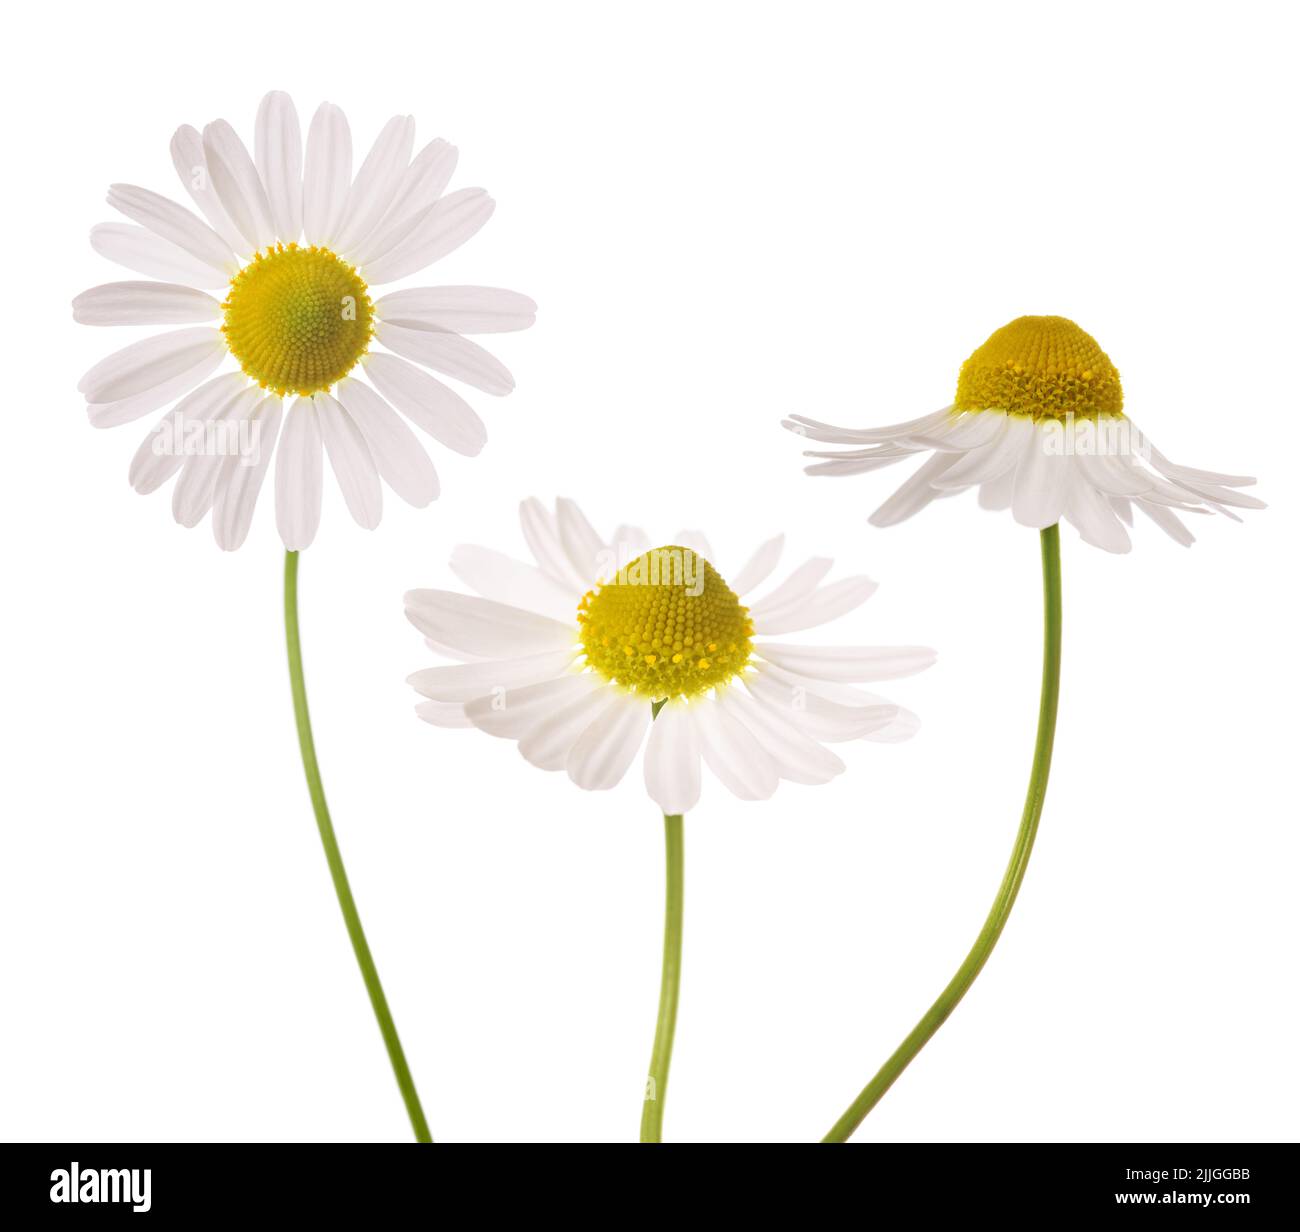 Chamomile flowers isolated on white background Stock Photo